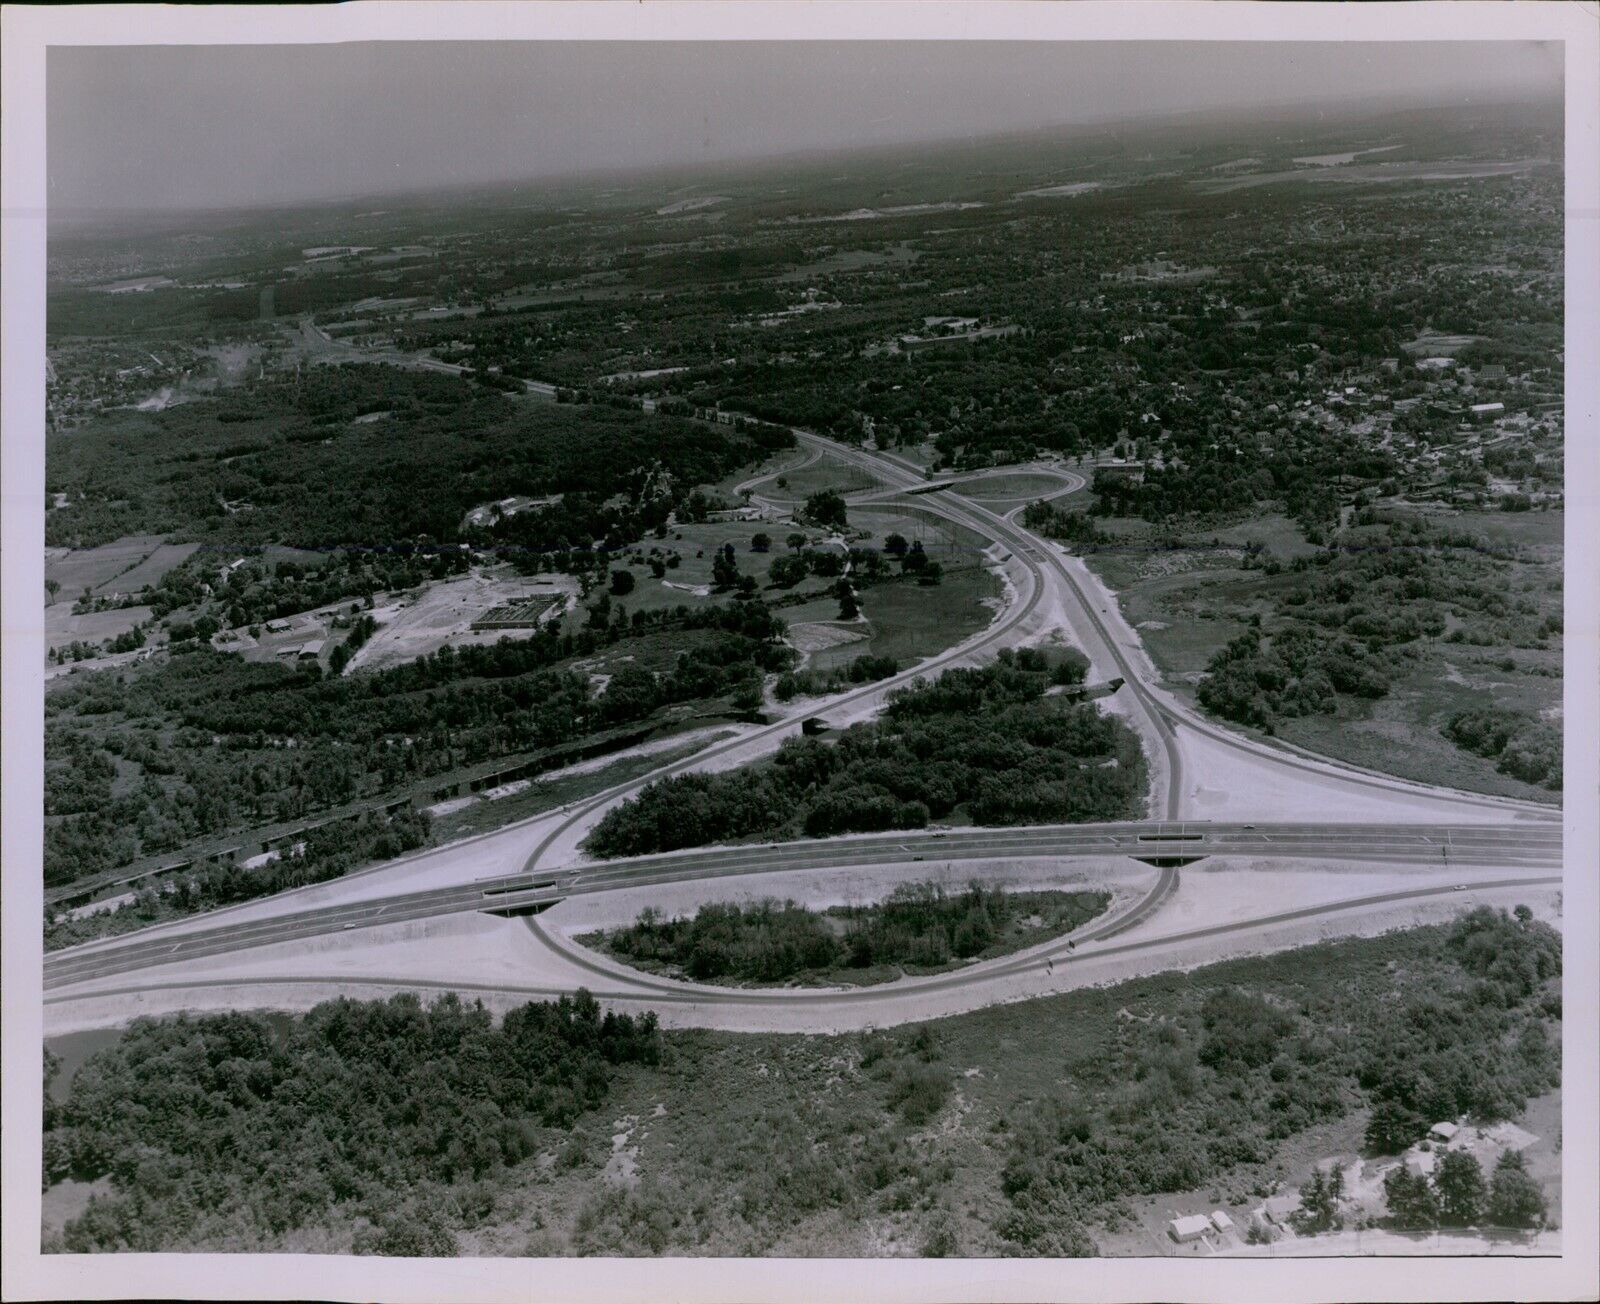 LG782 1962 Orig Photo MASSACHUSETTS HIGHWAYS Aerial View Winding Roads Traffic